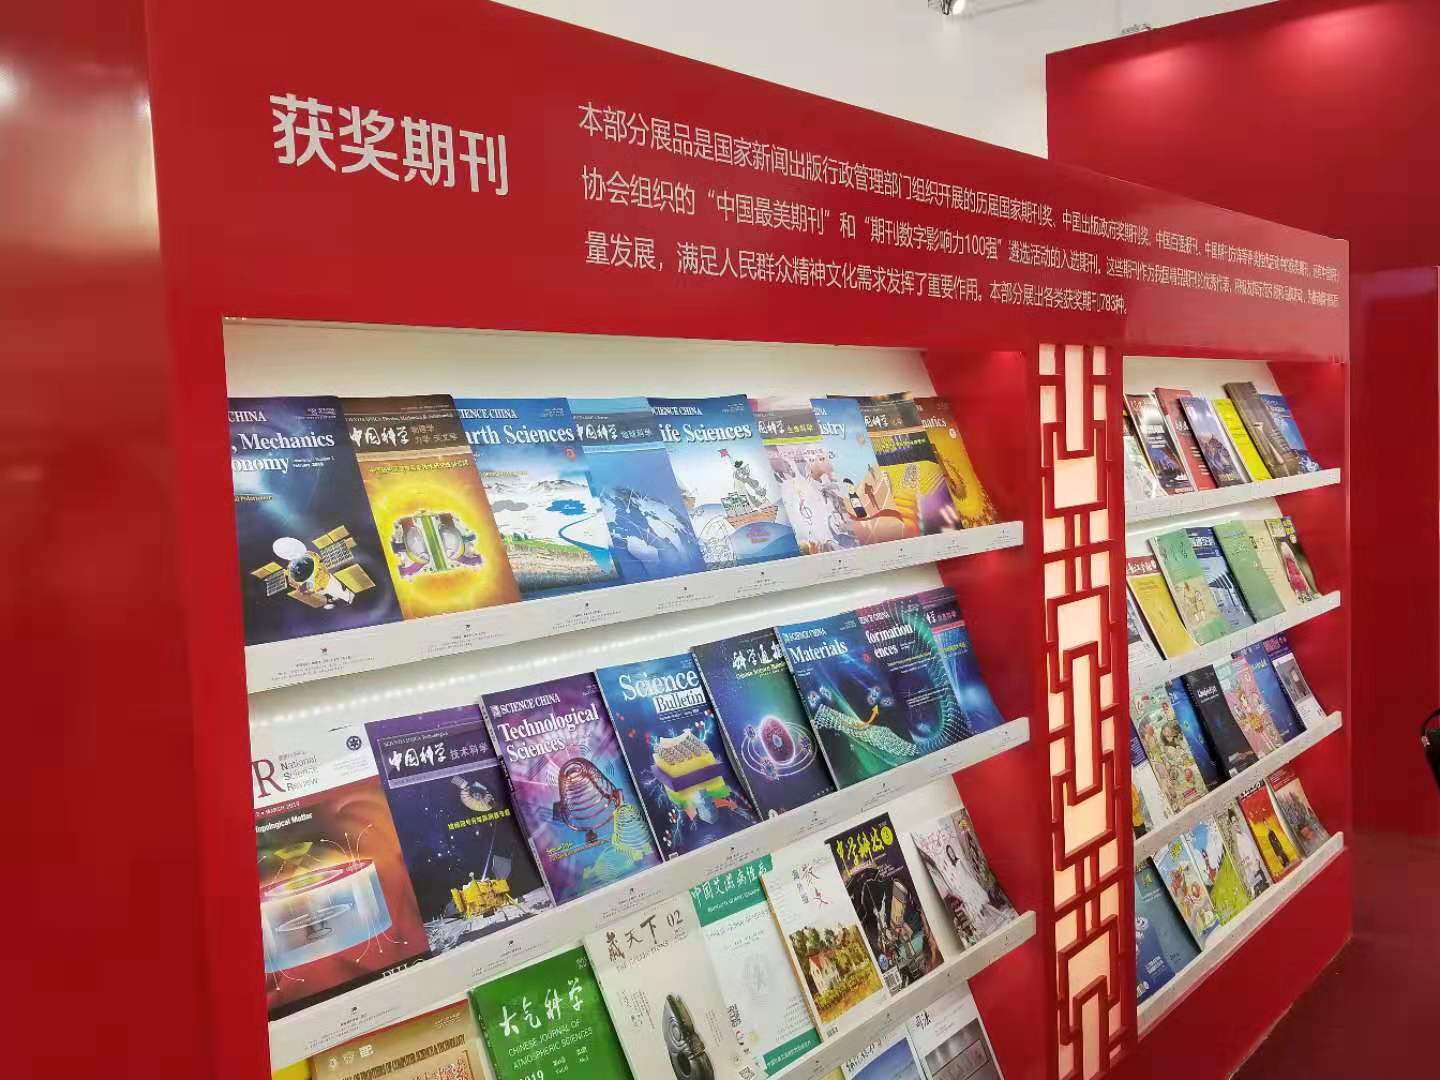 《当代经济科学》入选庆祝中华人民共和国成立70周年精品期刊展